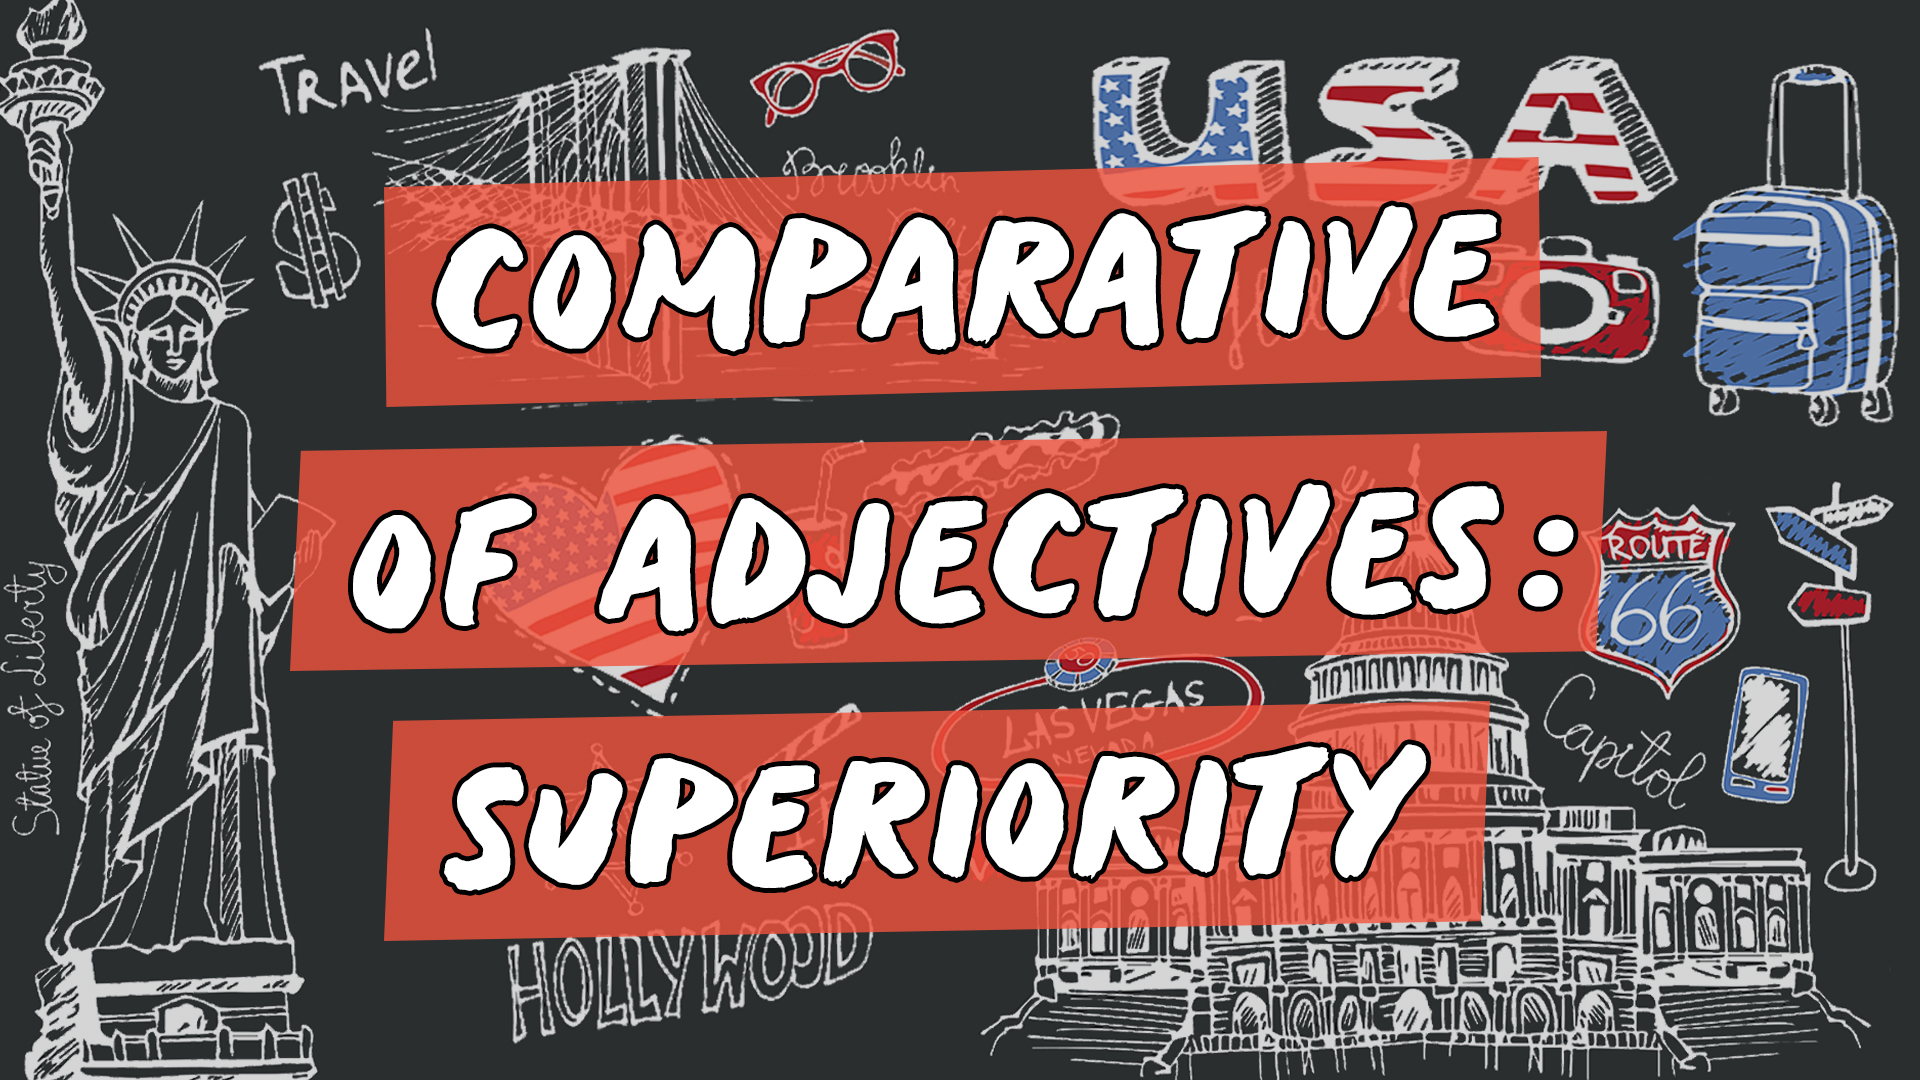 "Comparative of Adjectives: Superiority" escrito sobre ilustração de diversos ícones que representam os Estados Unidos